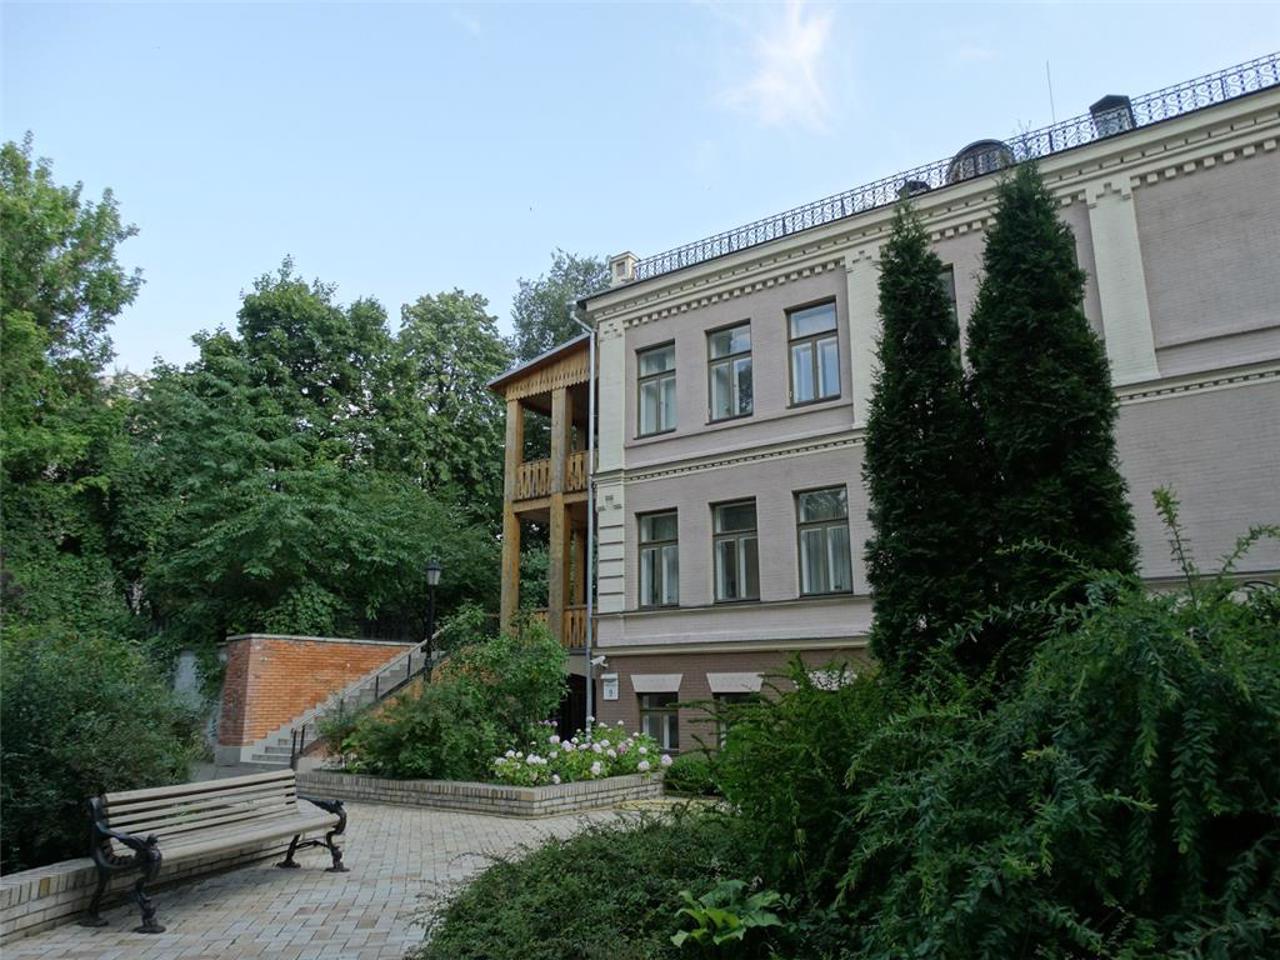 Mykhaylo Hrushevsky Museum, Kyiv